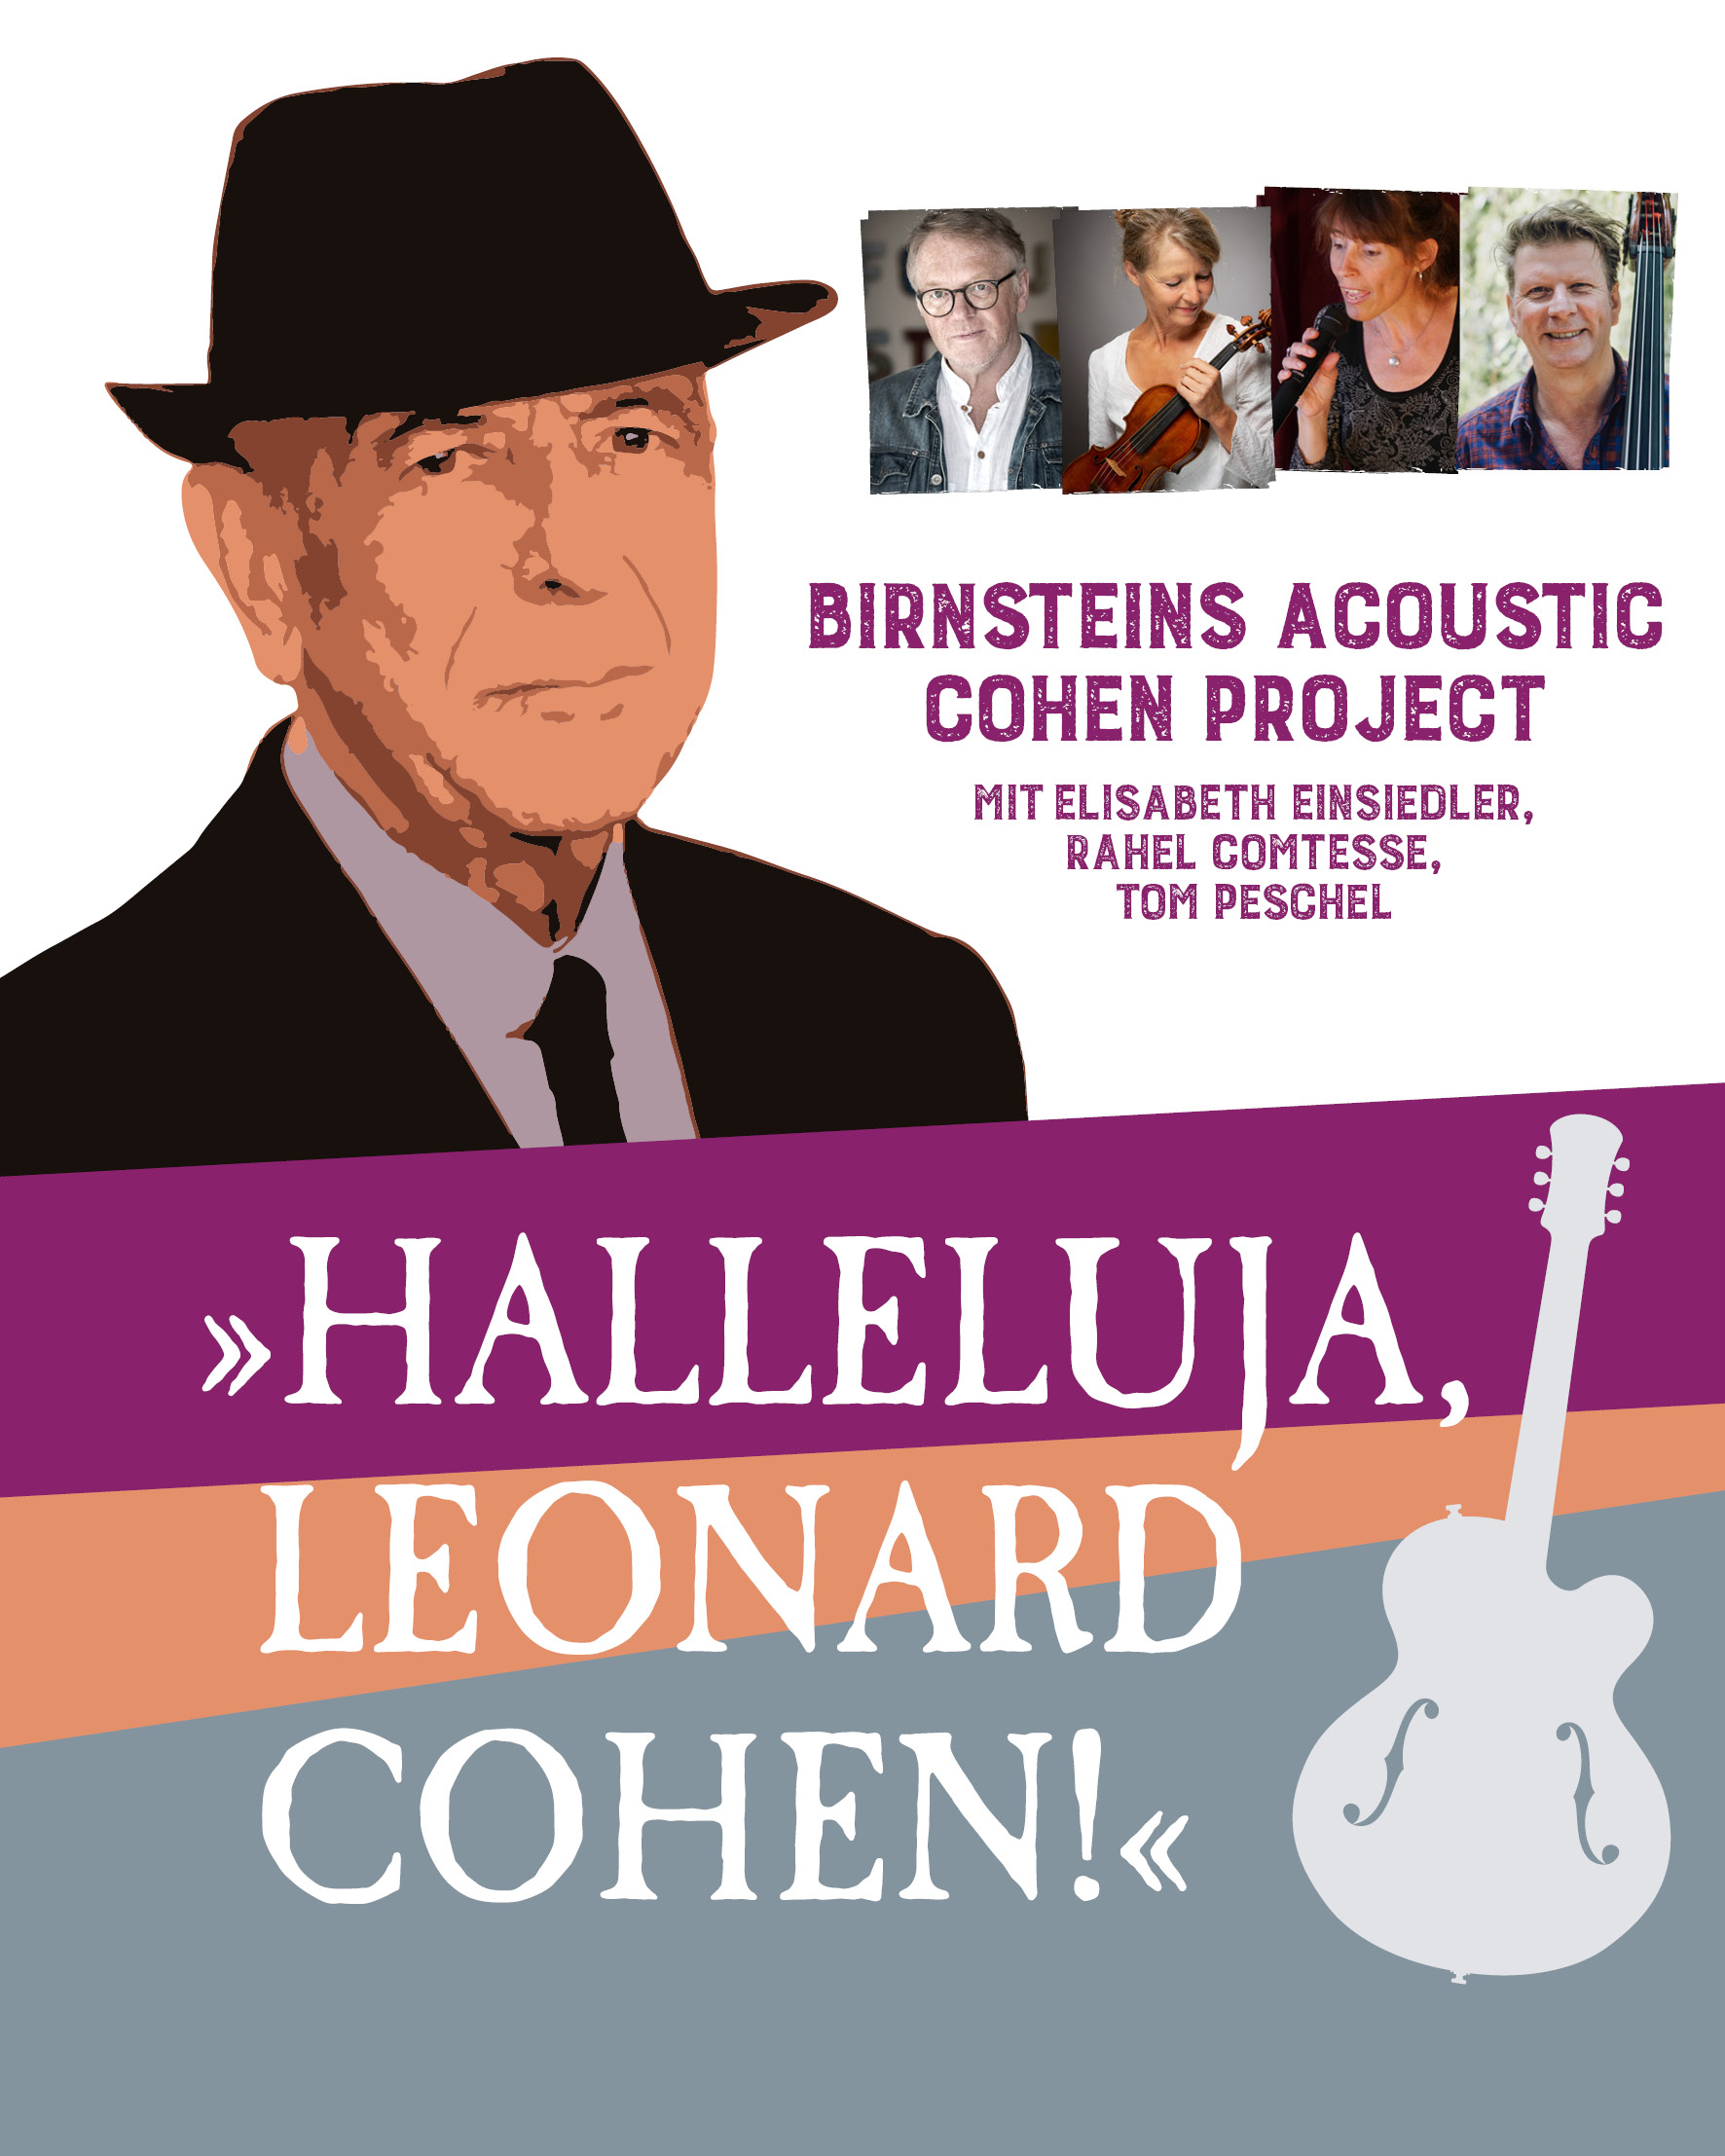 Uwe Birnsteins Acoustic Cohen Project